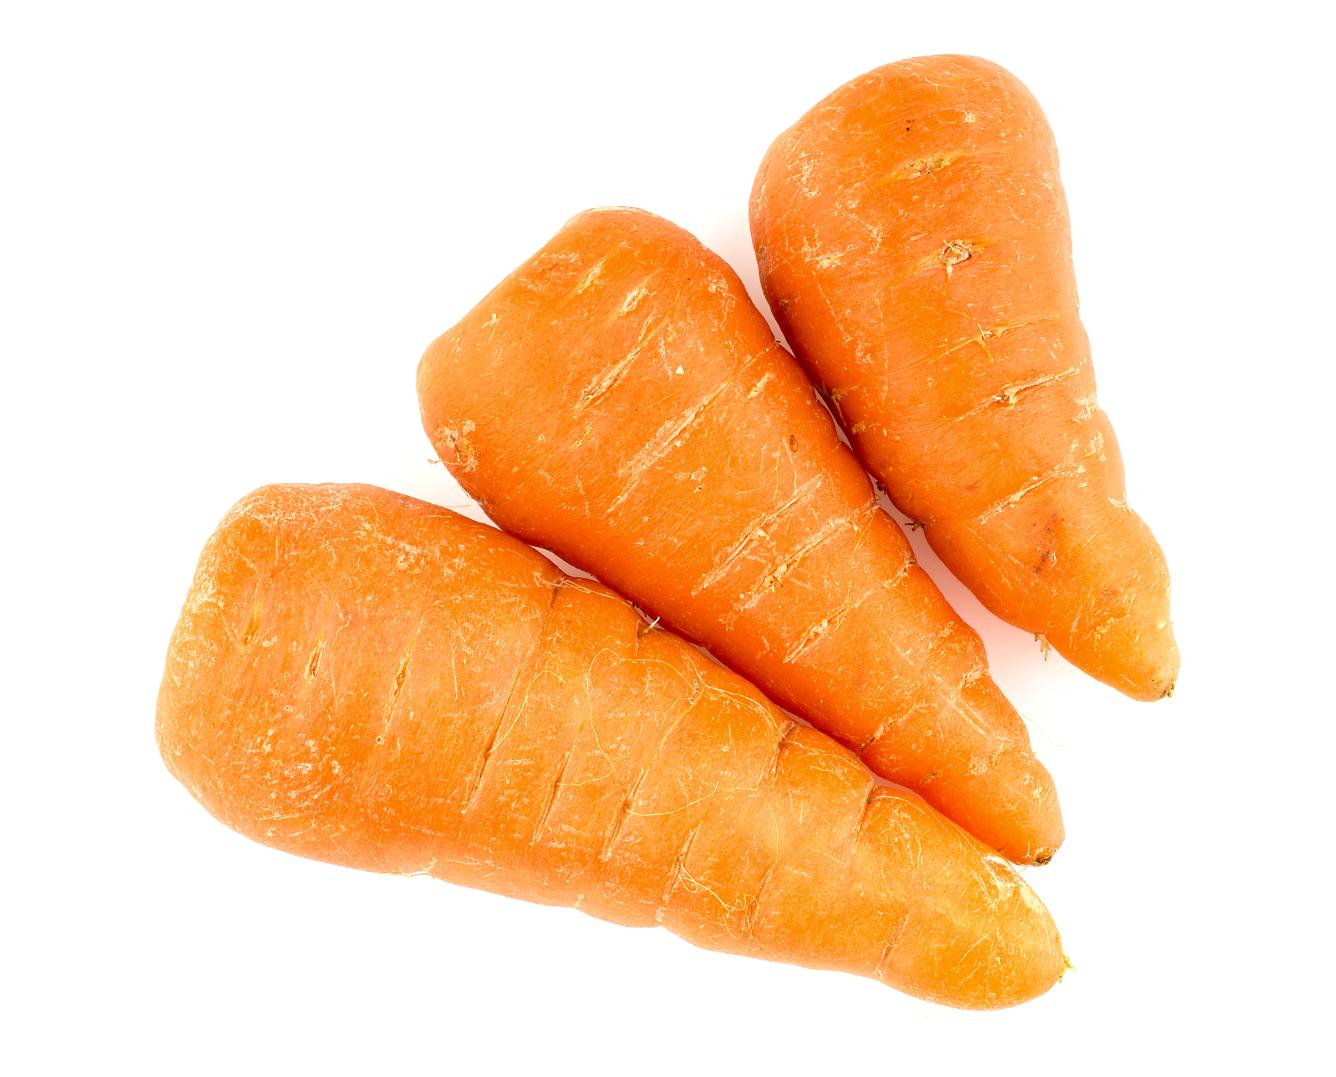 Three Chantenay carrots.